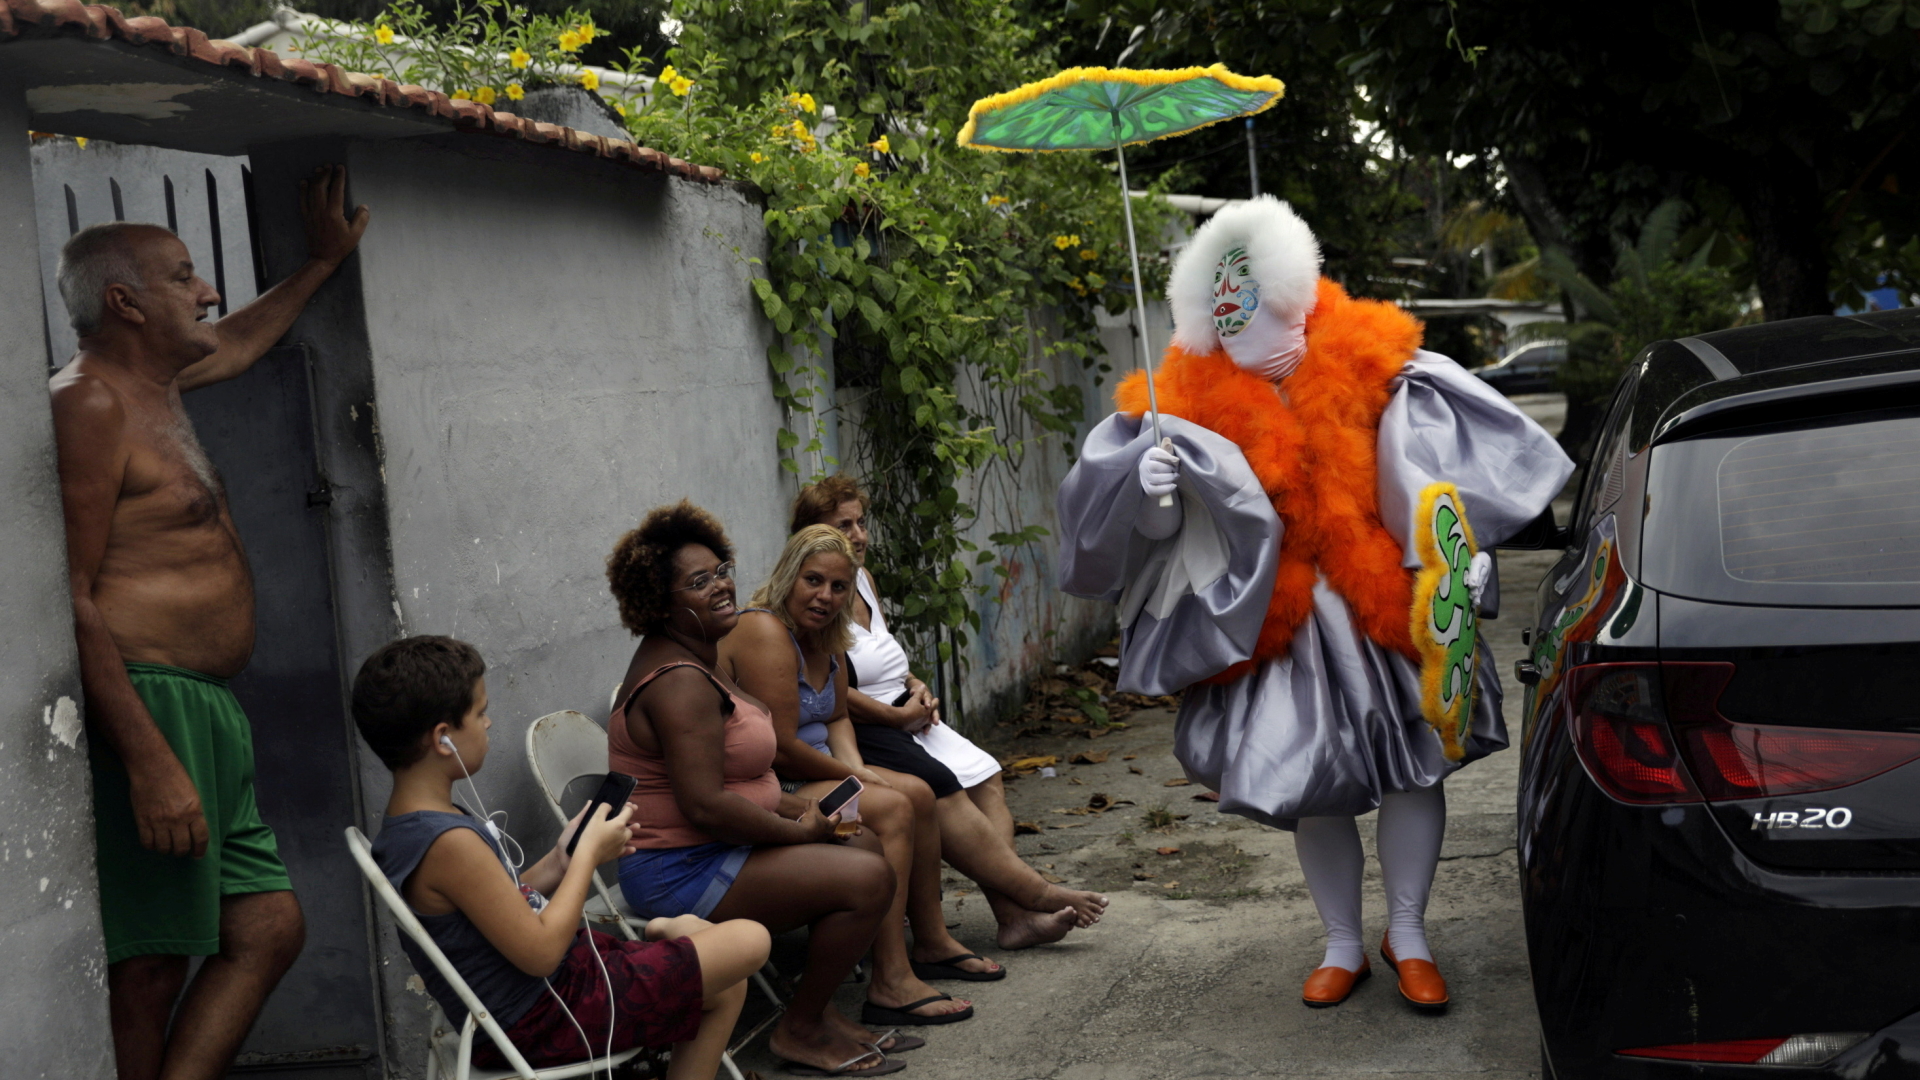 Ein kostümierter "Ballschläger" kommt in einem Vorort von Rio den Zuschauern ganz nah. | REUTERS